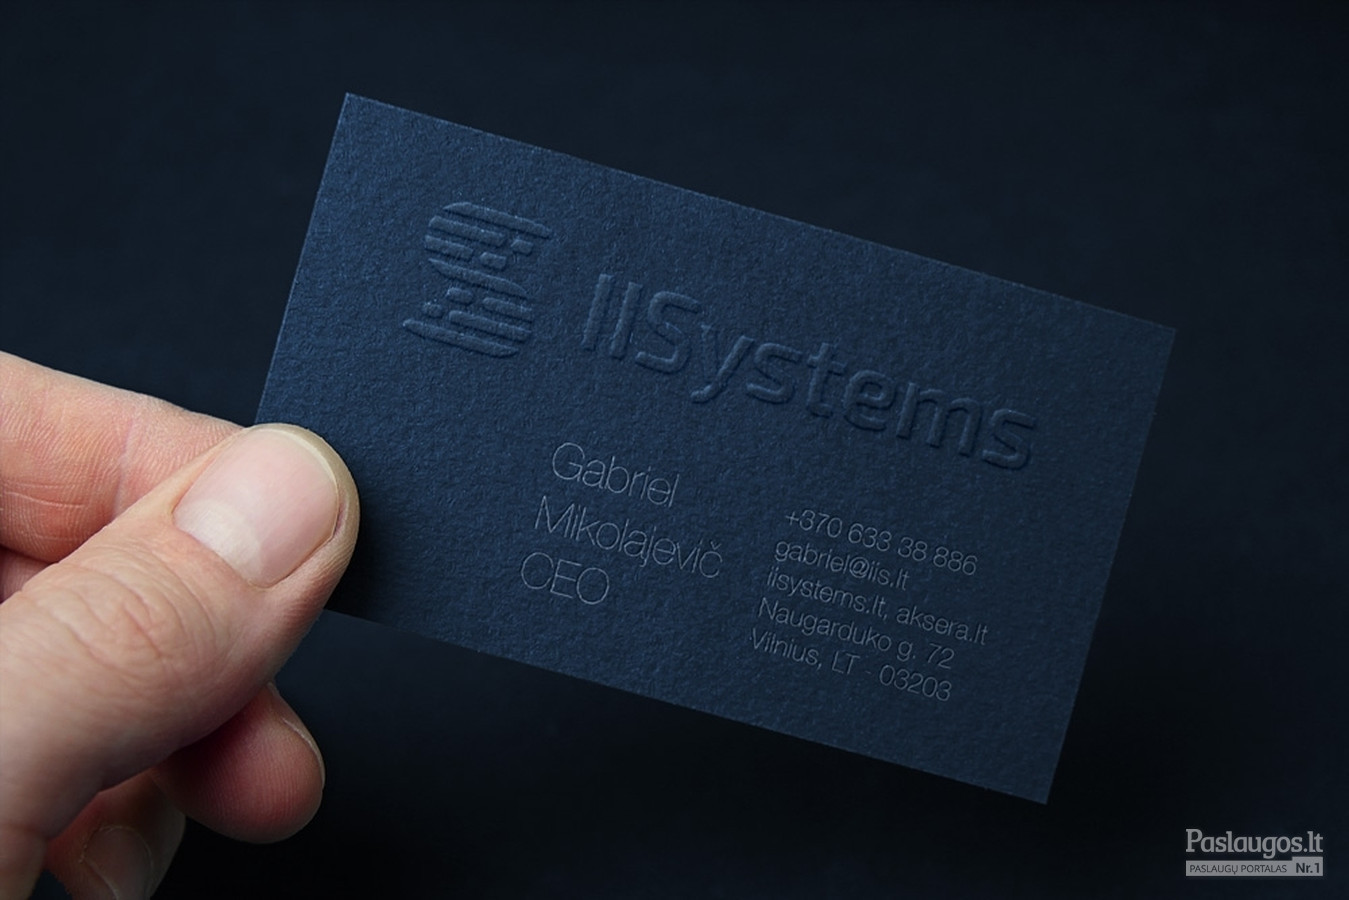 IISystems - Pramoninės technologijos / Logotipas, spauda, Web dizainas / iisystems.lt / Kostas Vasarevicius - kostazzz@gmail.com